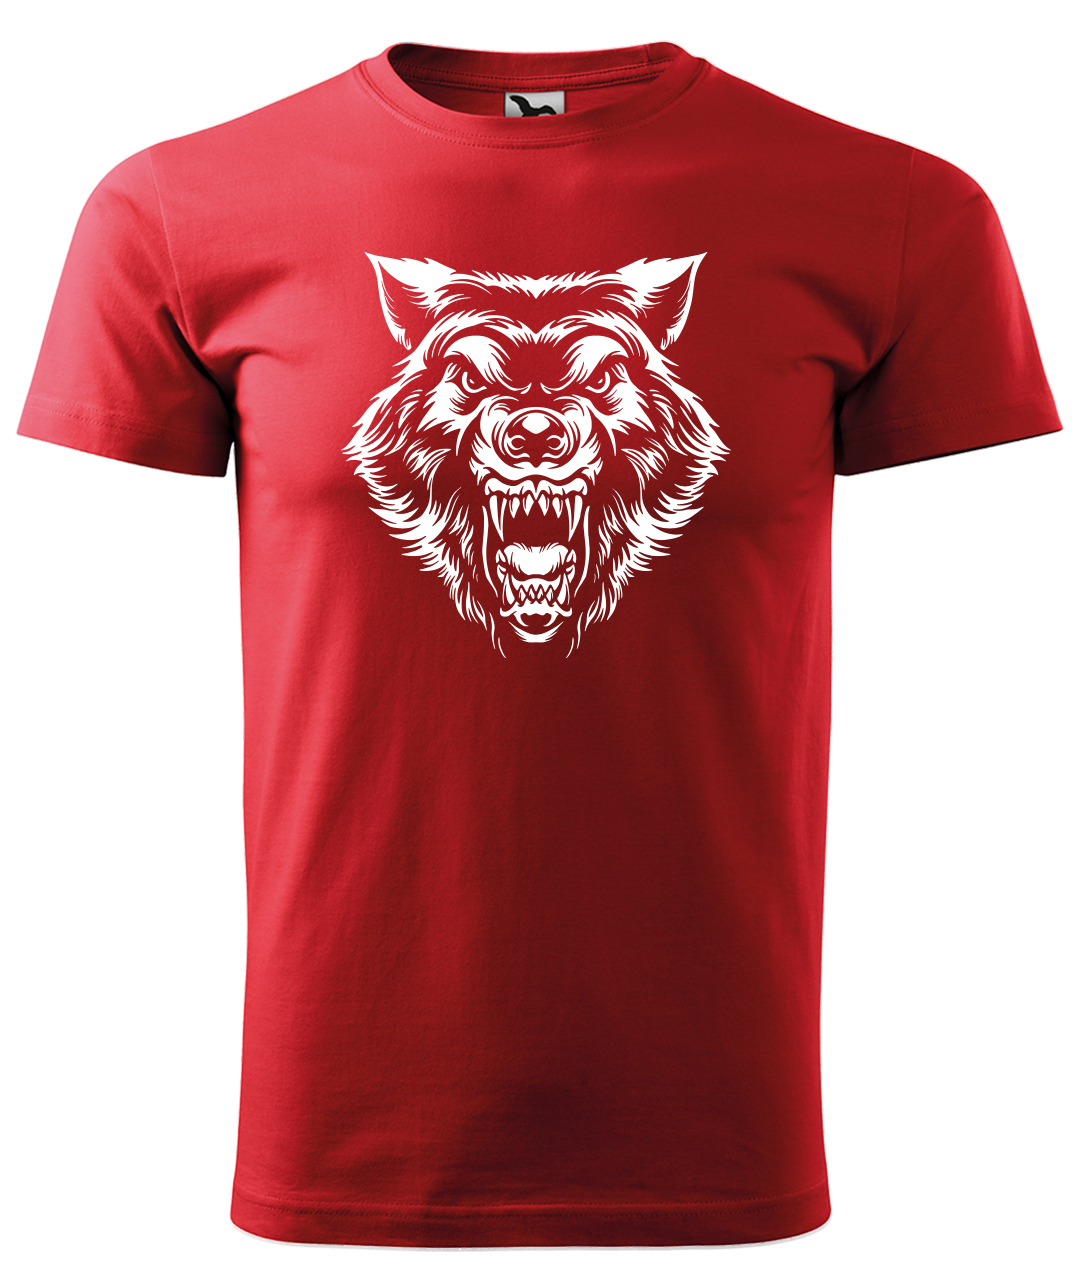 Dětské tričko s vlkem - Rozzuřený vlk Velikost: 6 let / 122 cm, Barva: Červená (07), Délka rukávu: Krátký rukáv